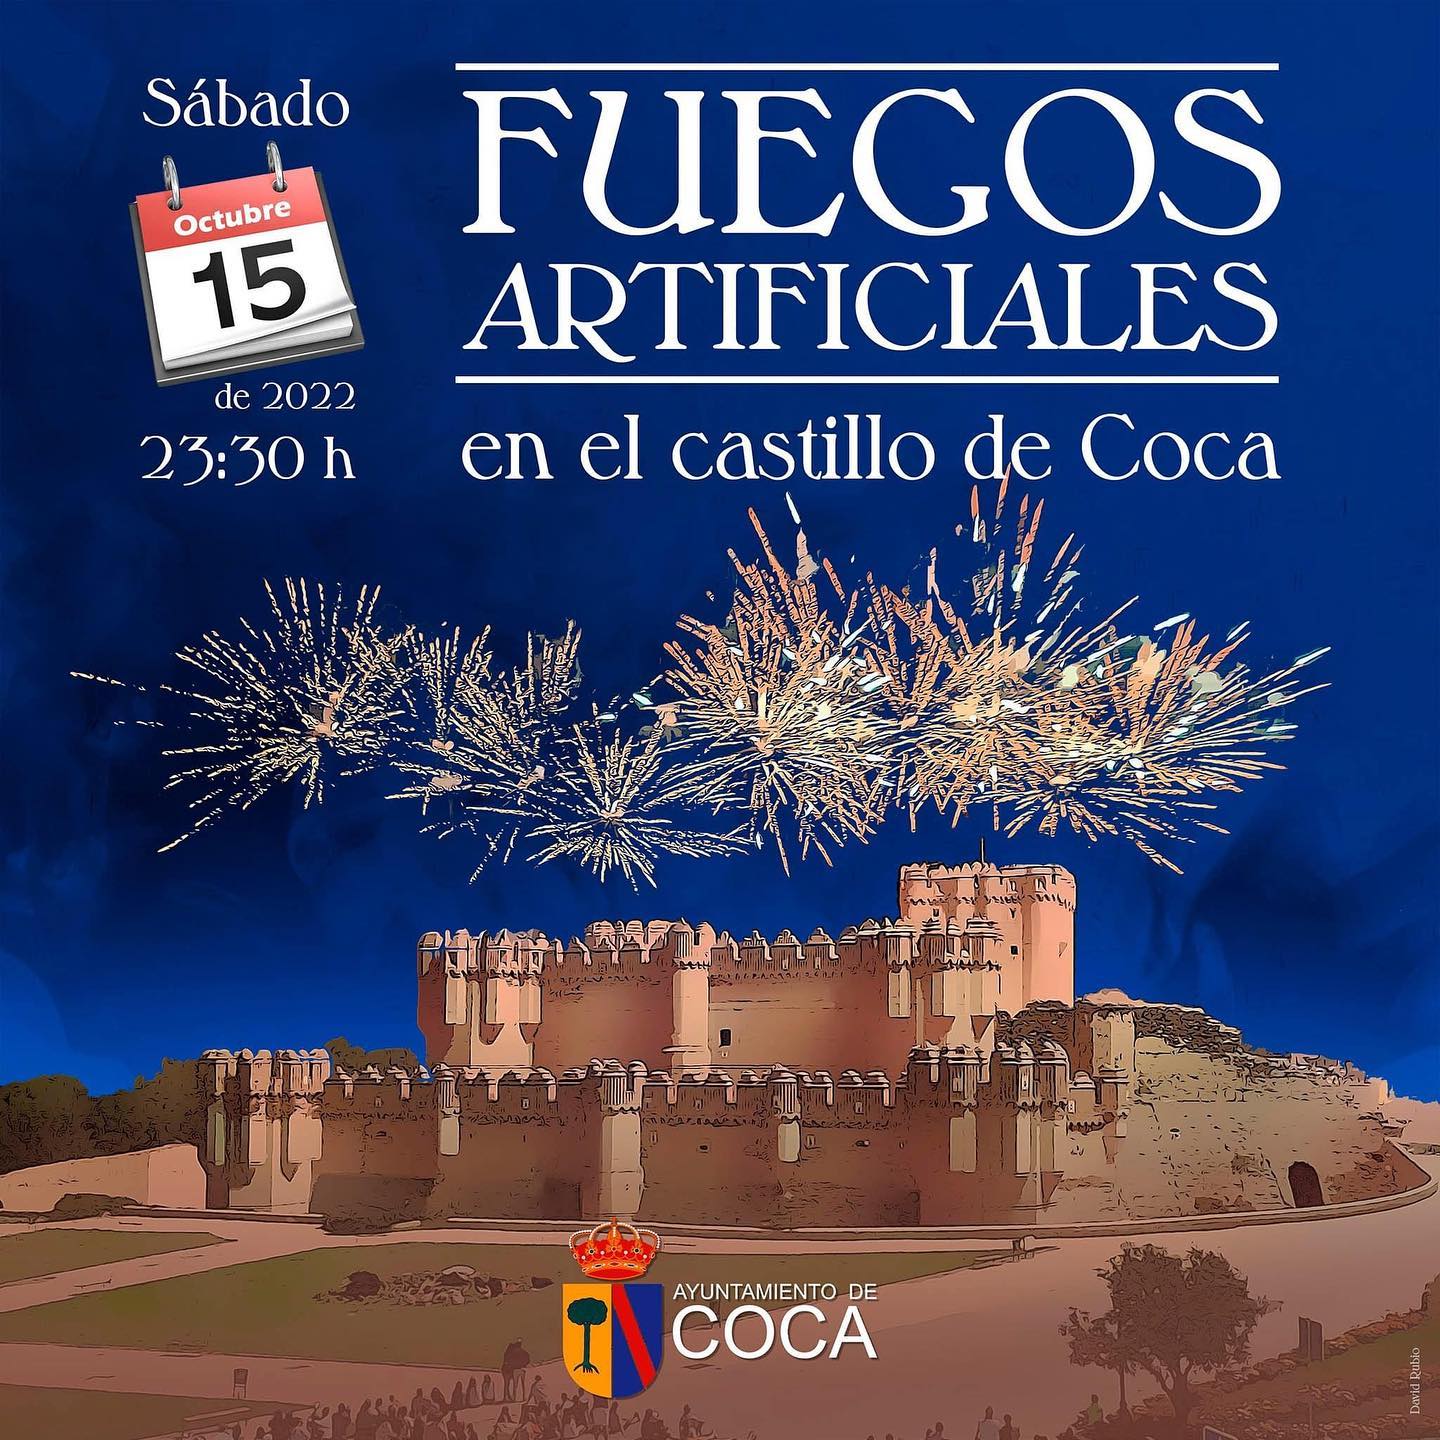 Fuegos Artificiales en el Castillo de Coca